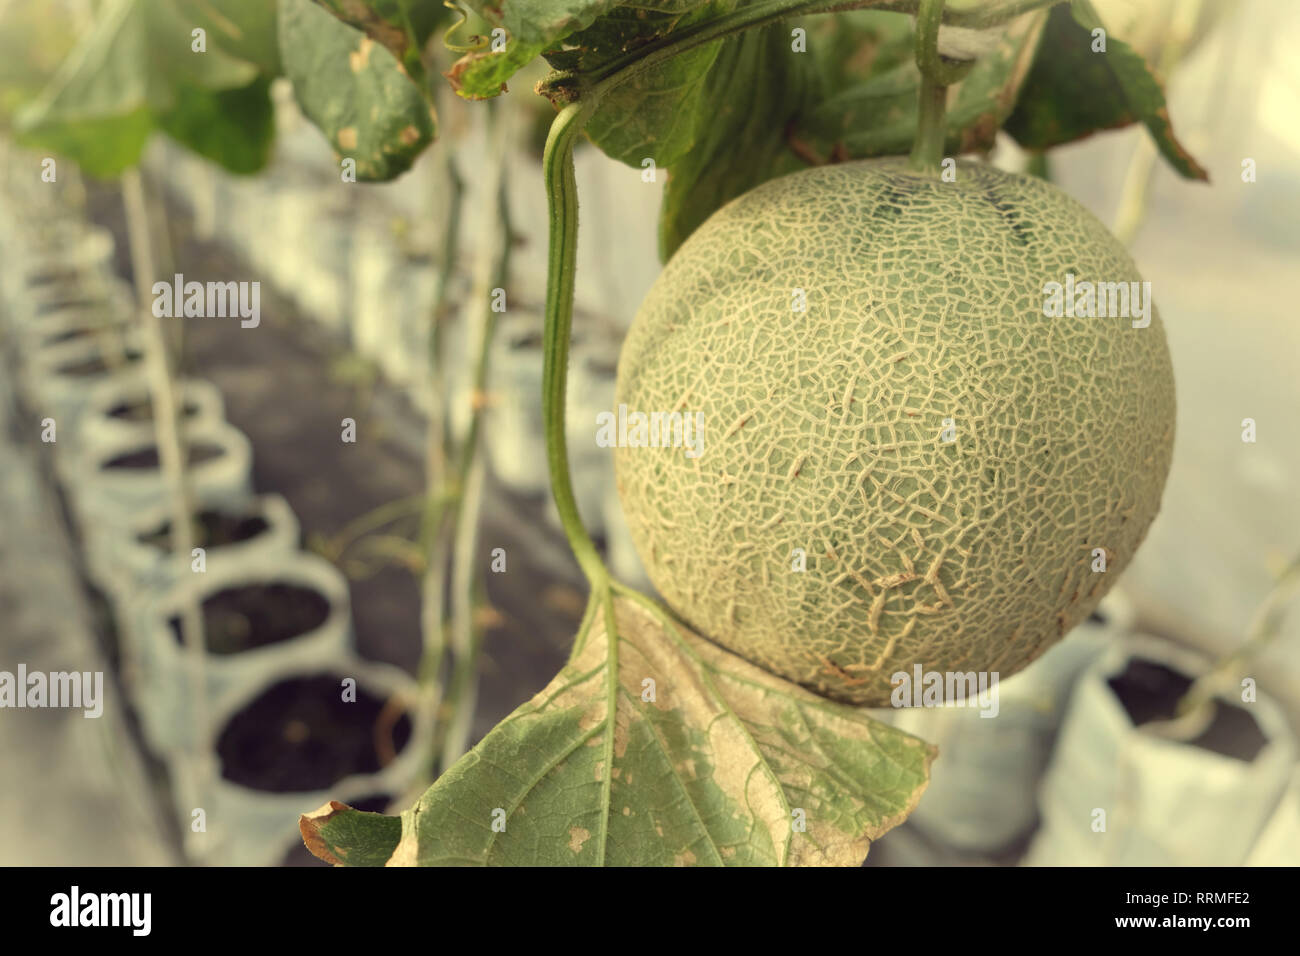 Junge Triebe der japanischen Melonen oder grüne Melonen oder Melone Melonen Pflanzen im Gewächshaus farm string Melone Netze unterstützt. Stockfoto